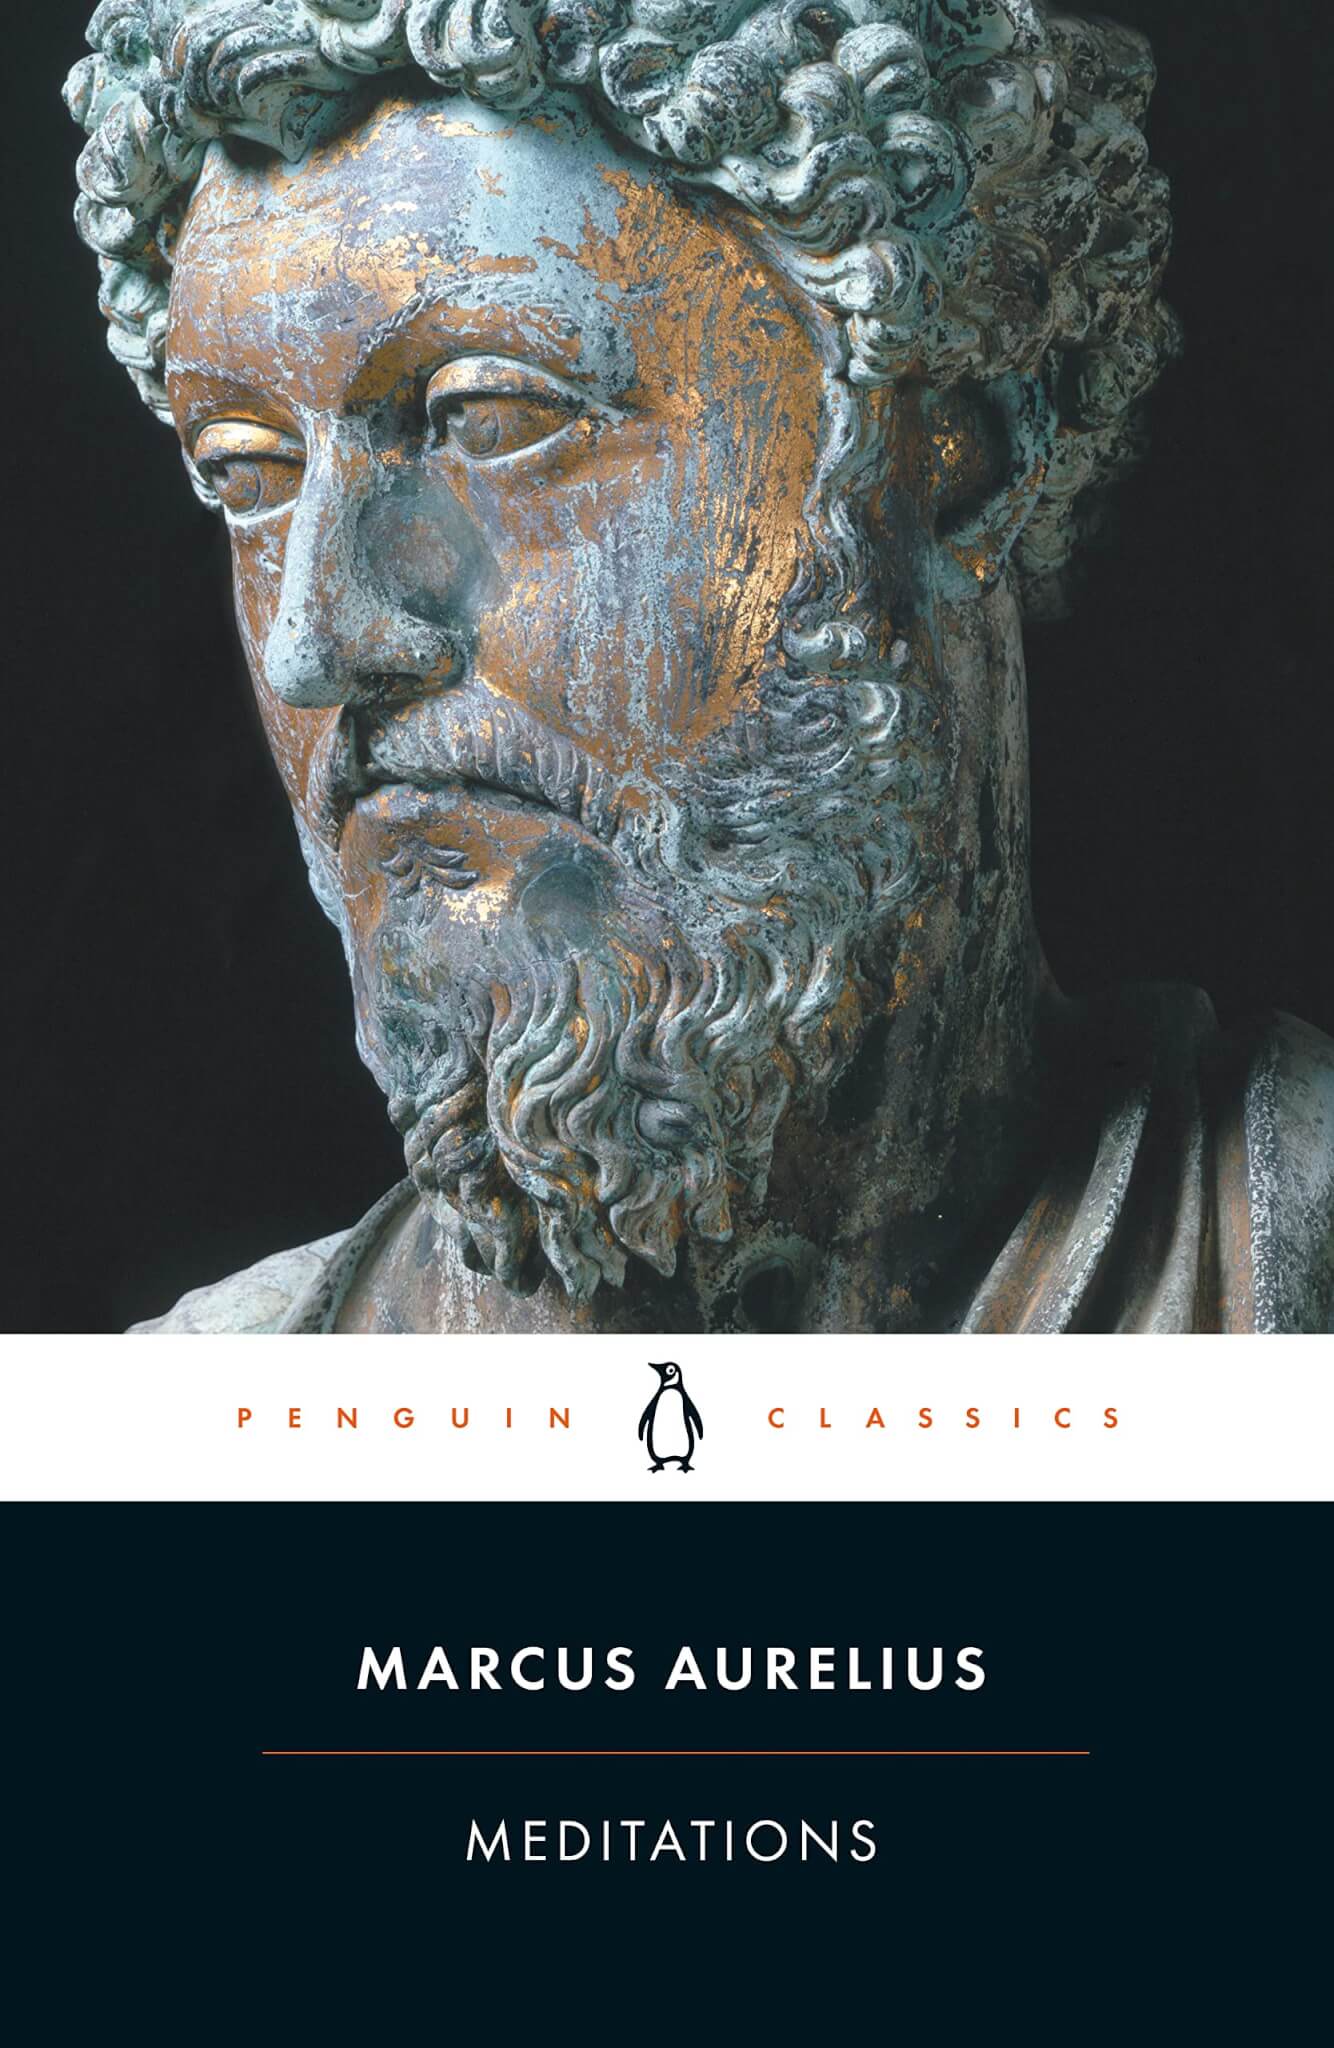 "Meditations" by Marcus Aurelius